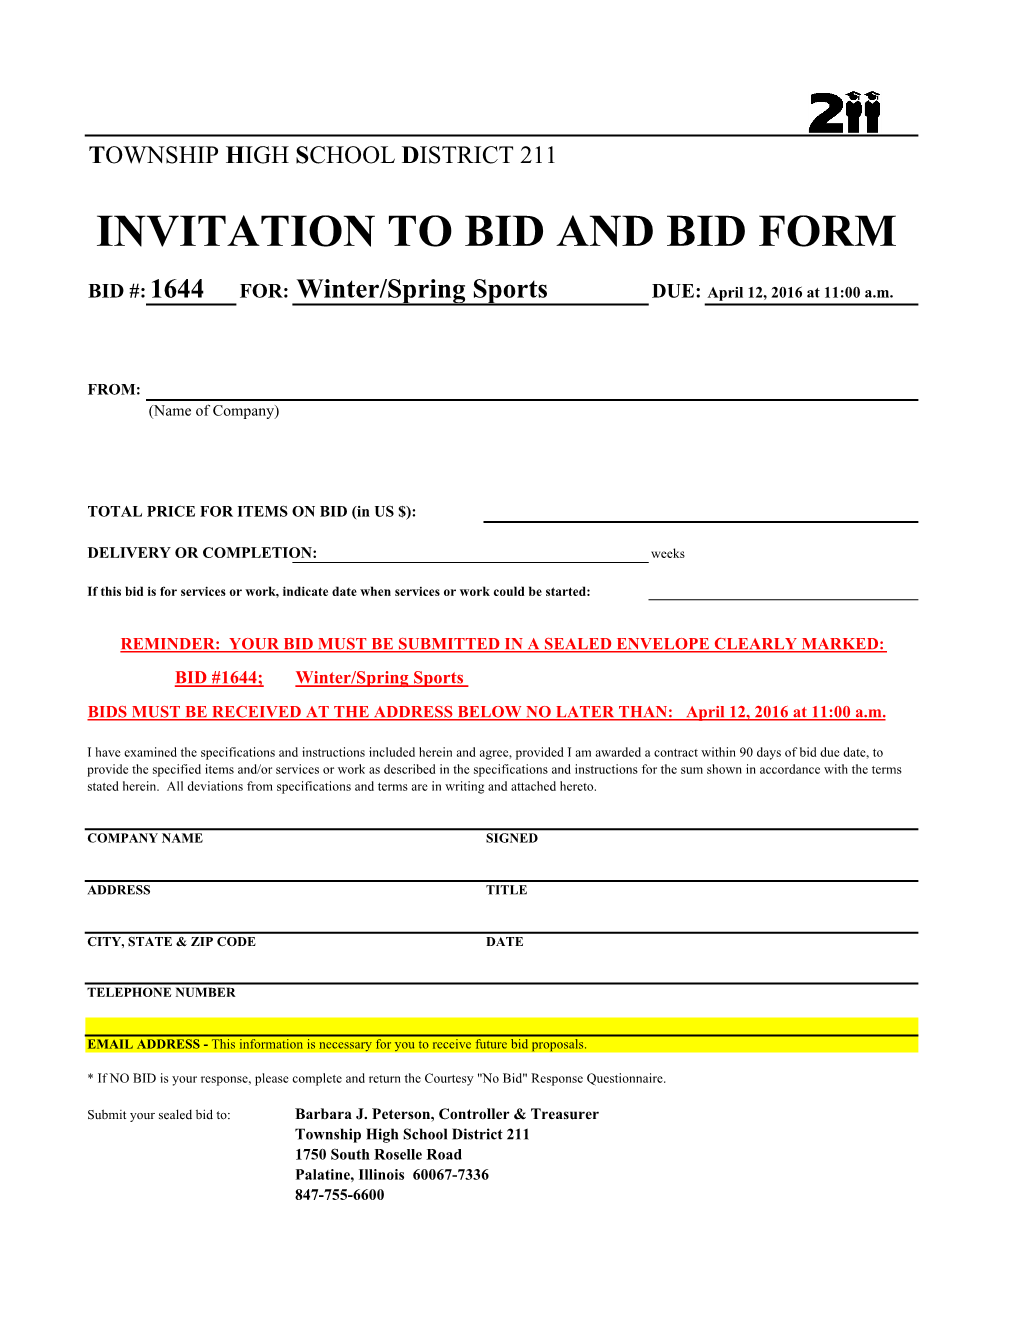 Invitation to Bid and Bid Form